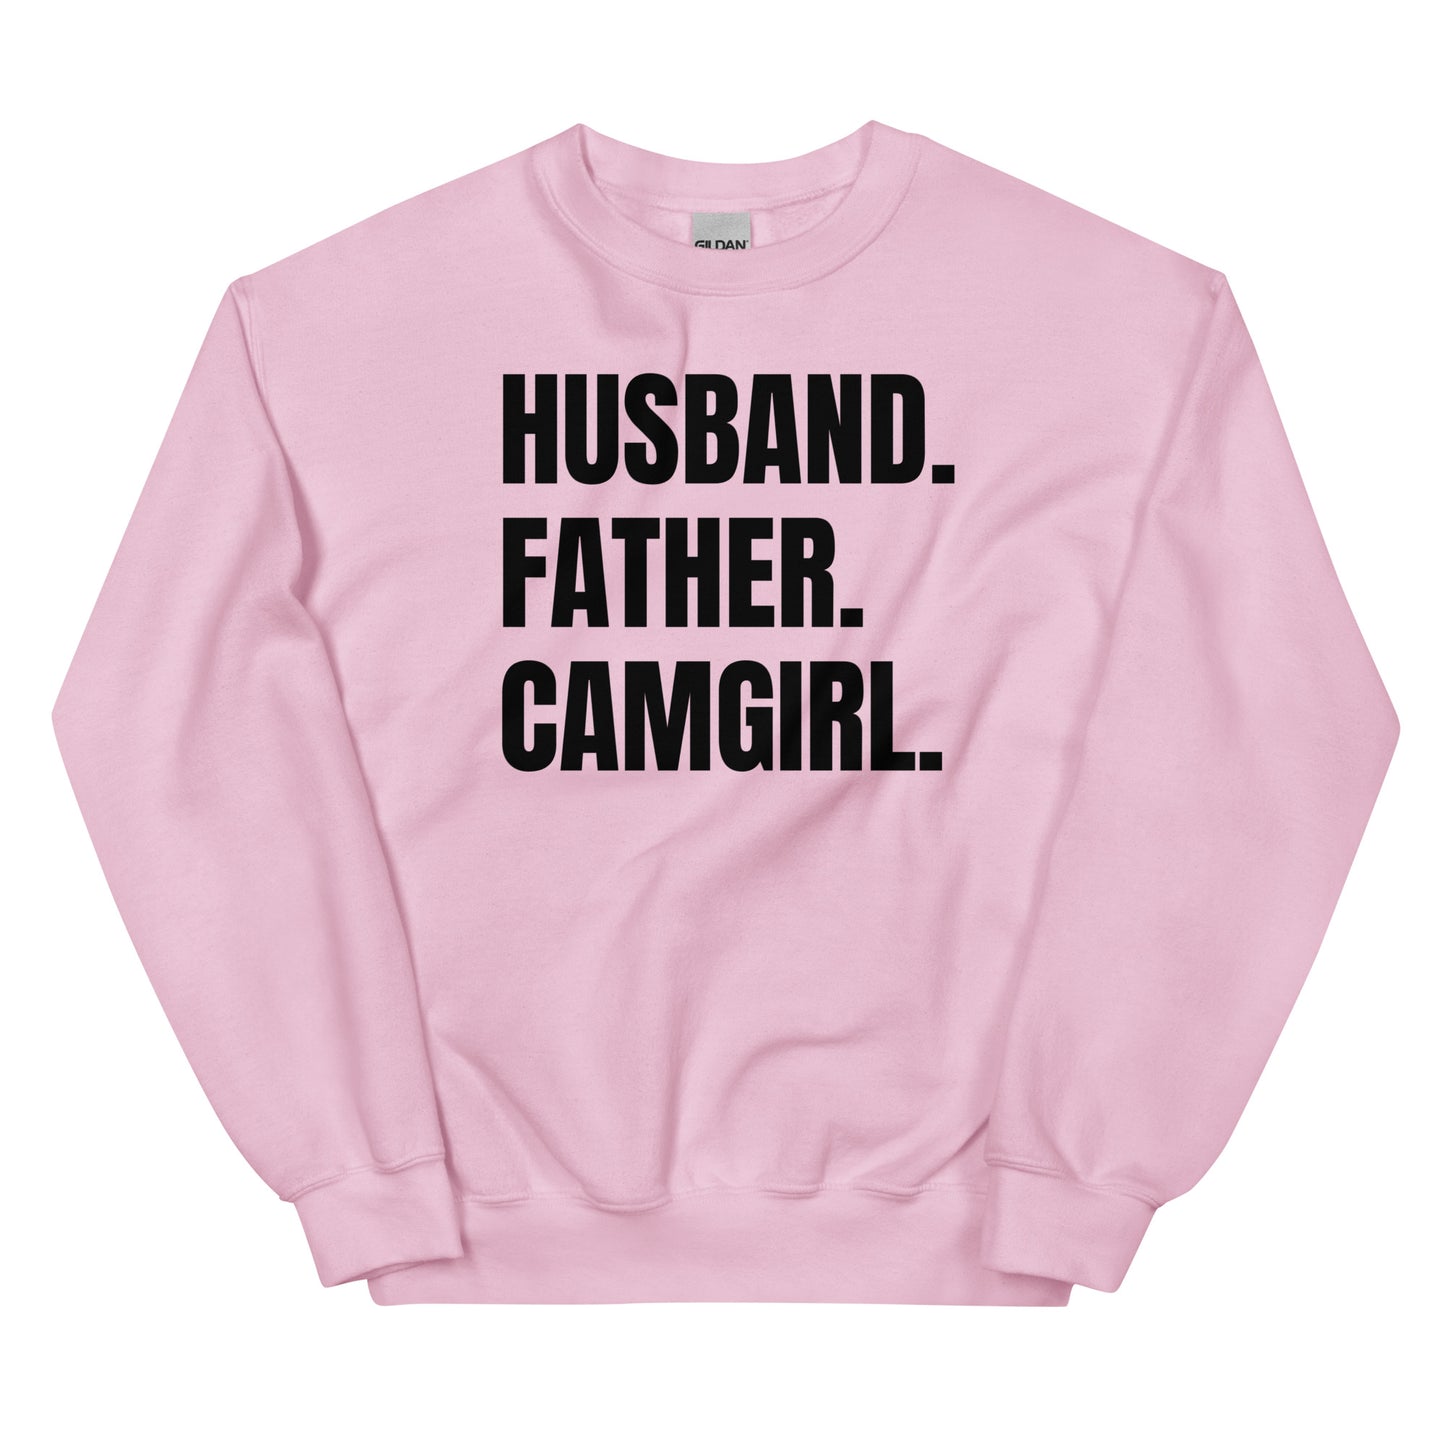 Husband. Father. Camgirl. Unisex Sweatshirt